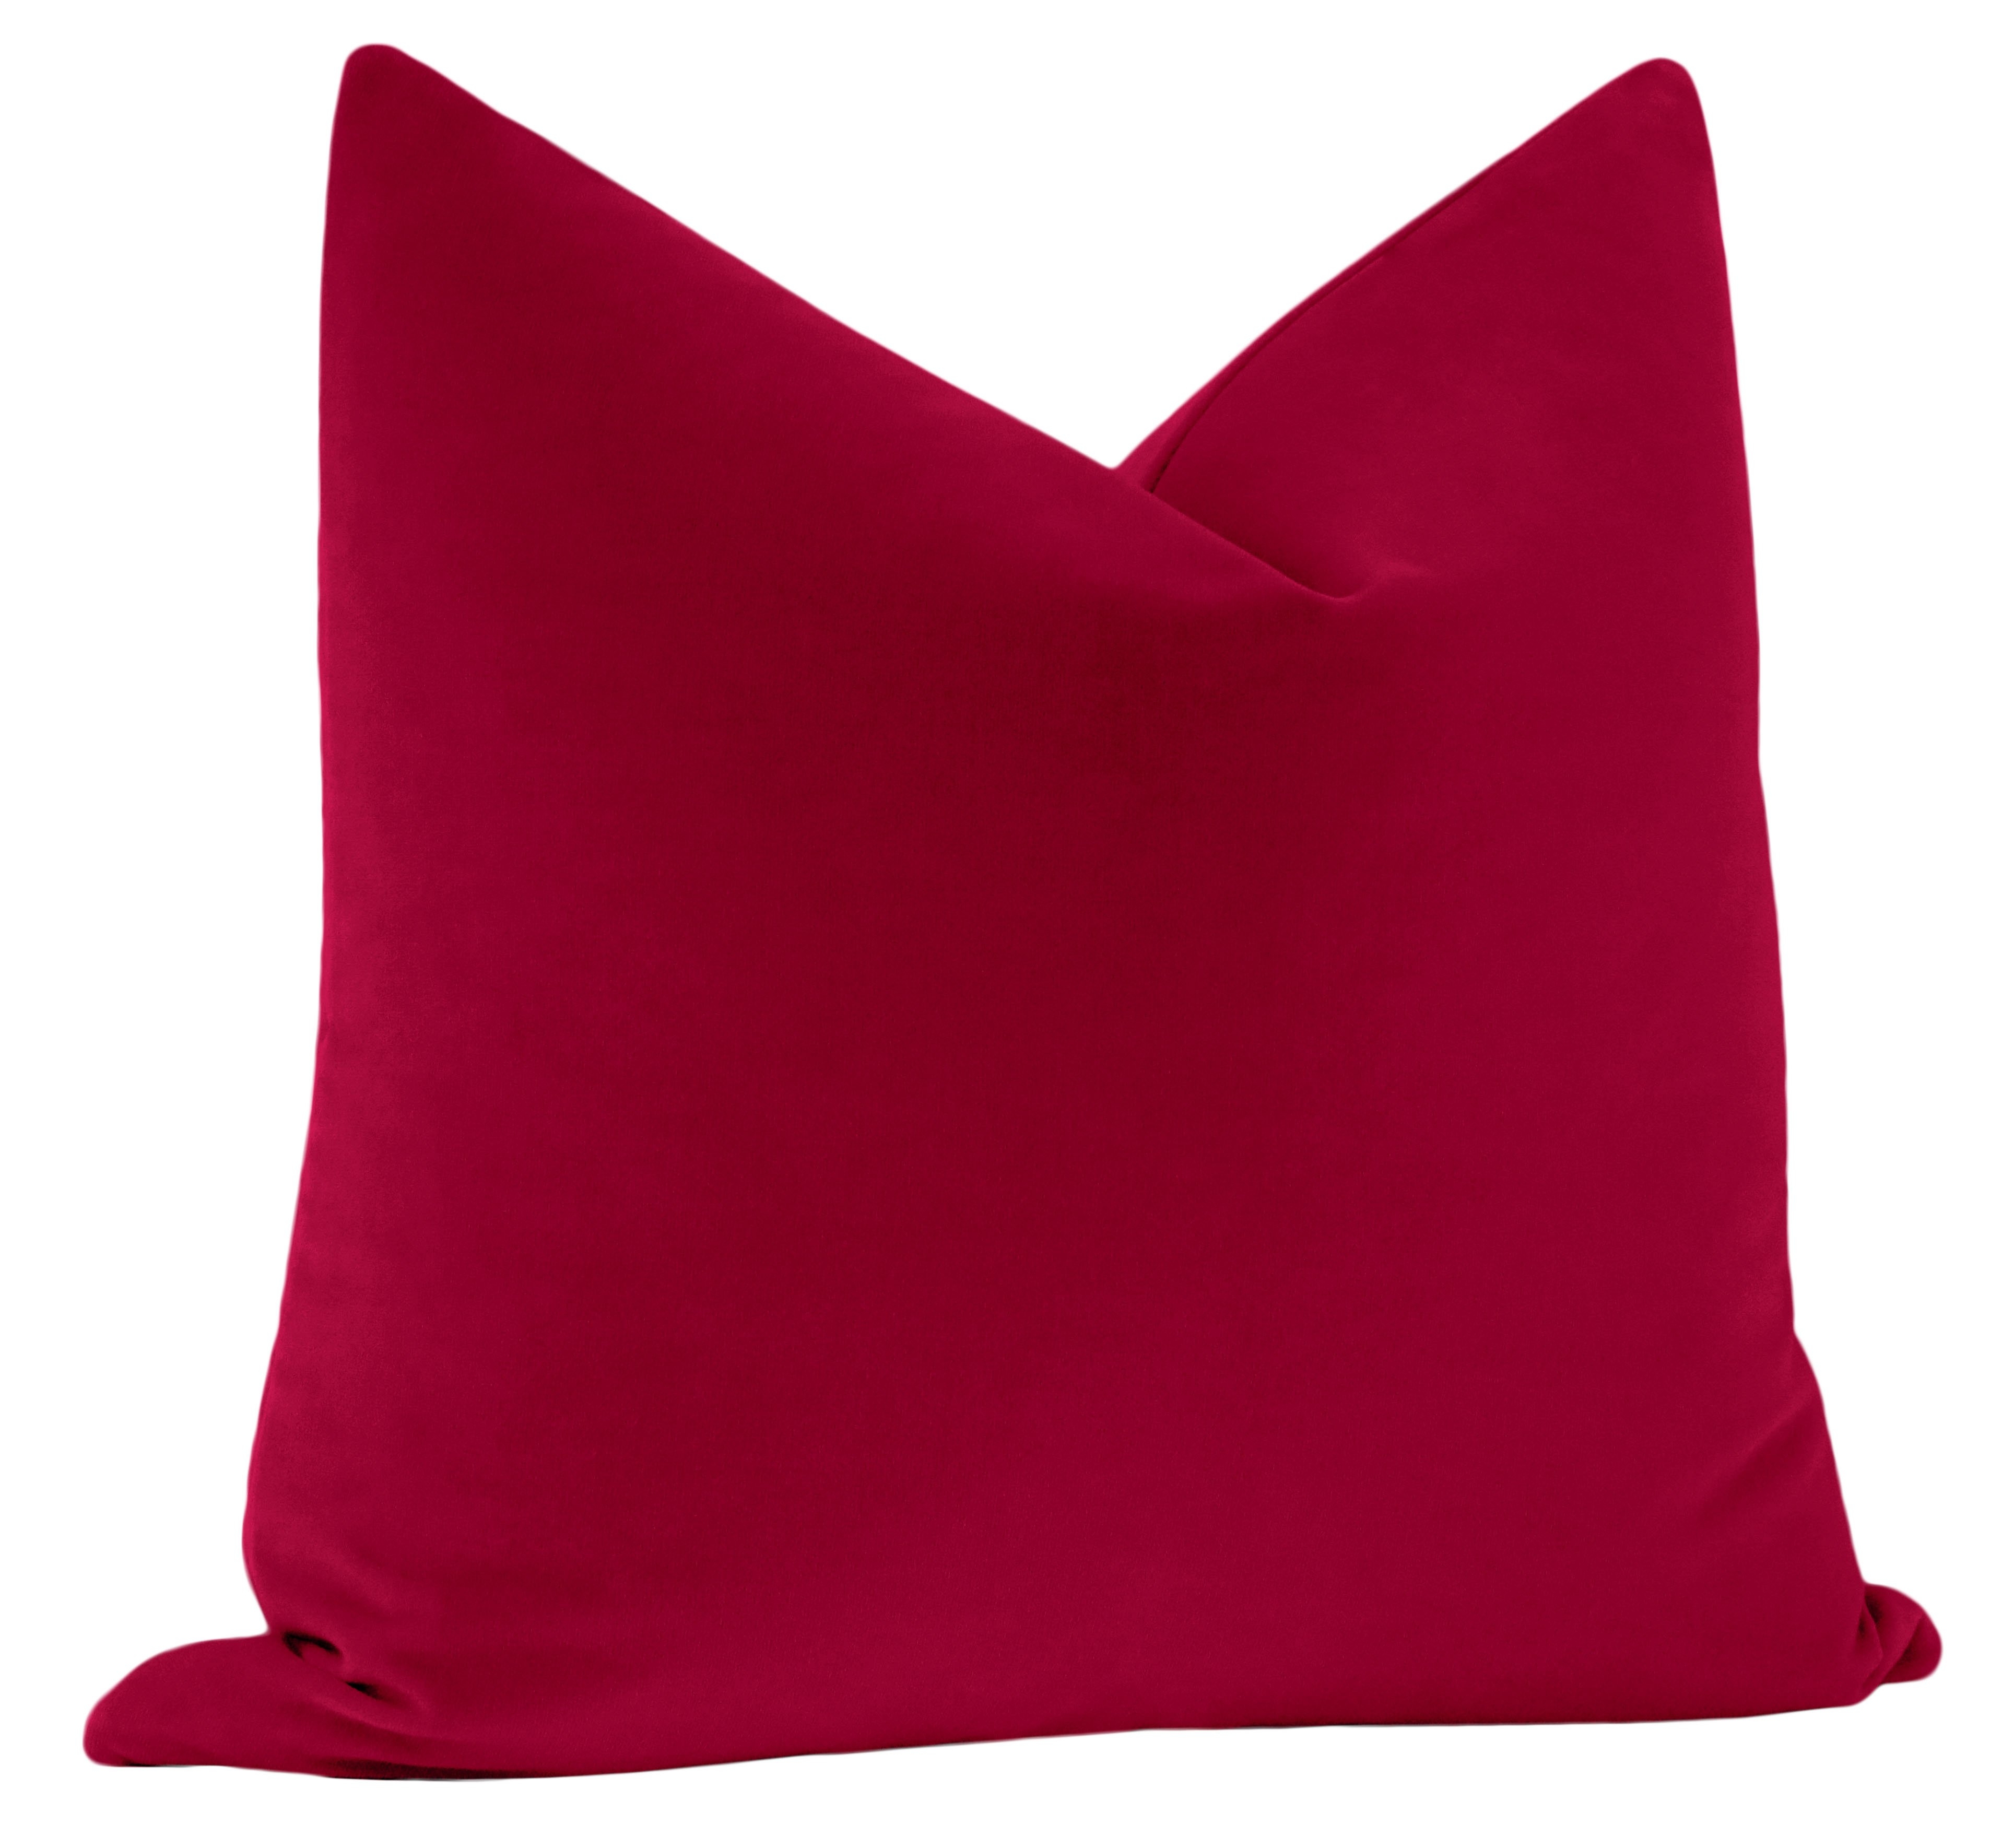 Studio Velvet Pillow Cover, Magenta, 20" x 20" - Image 2